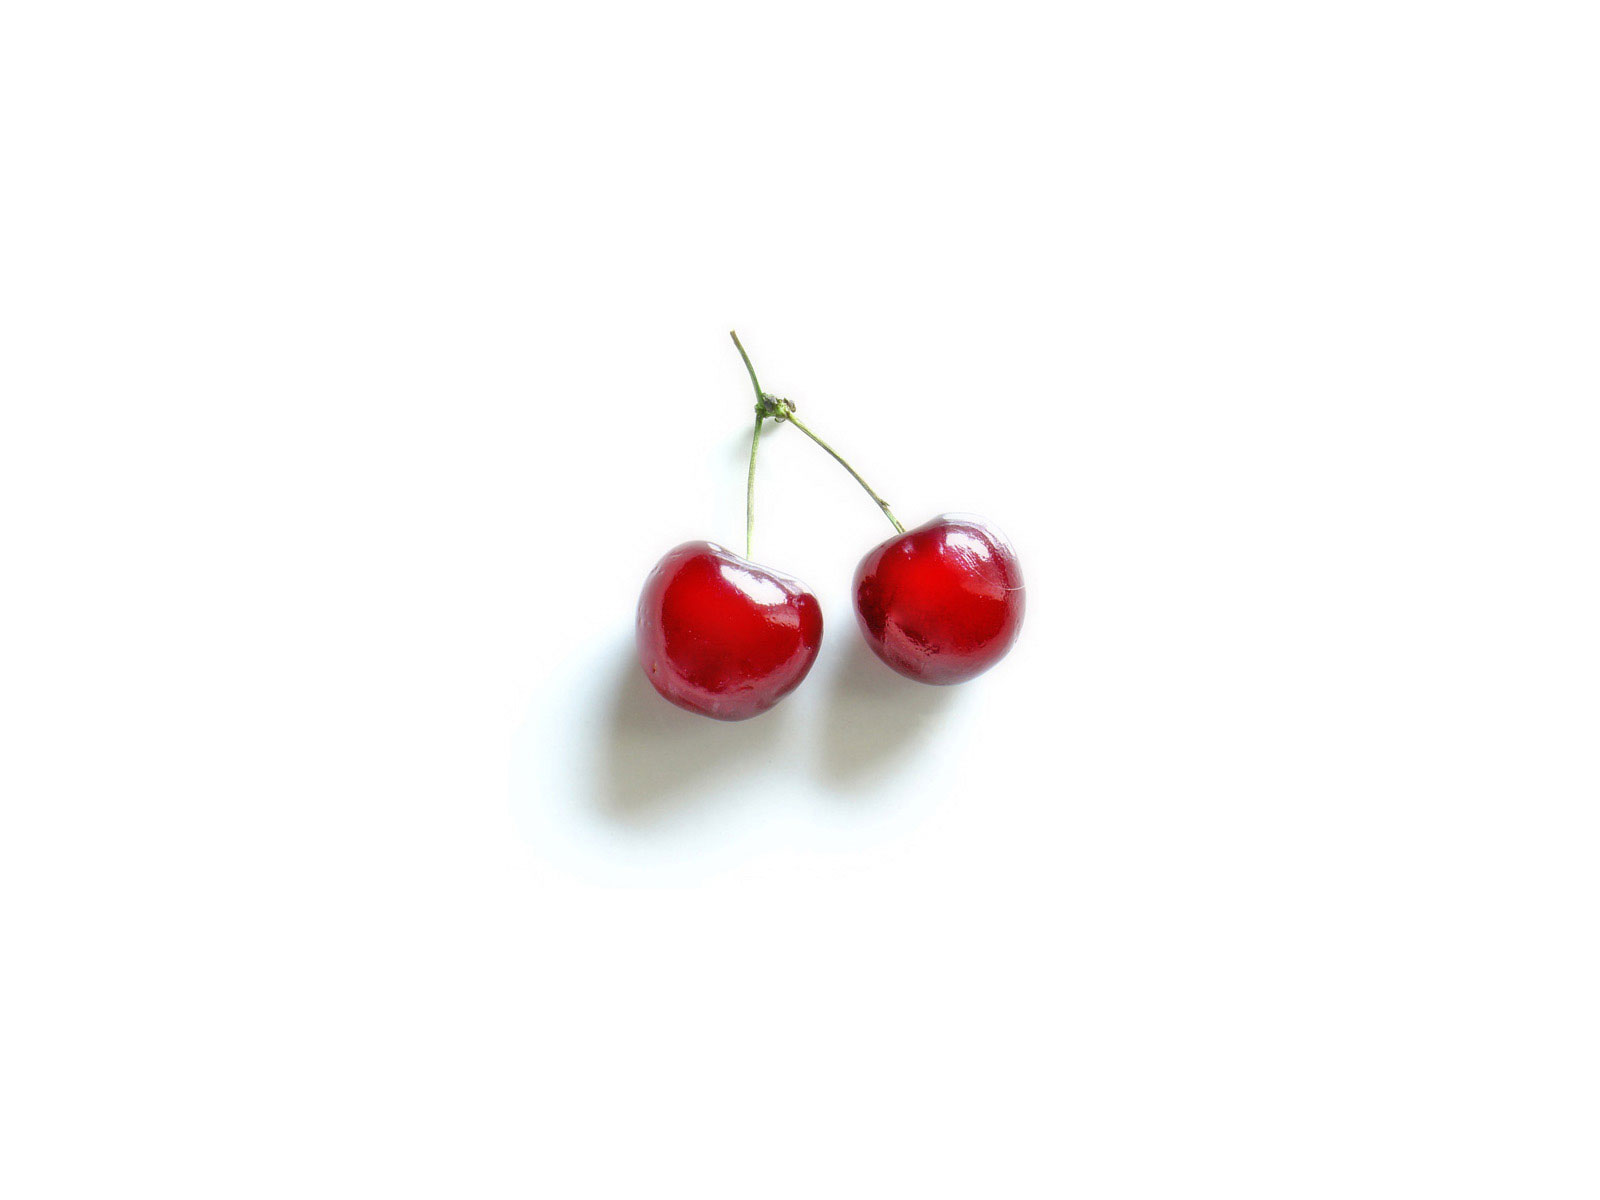 Cherries Wallpaper